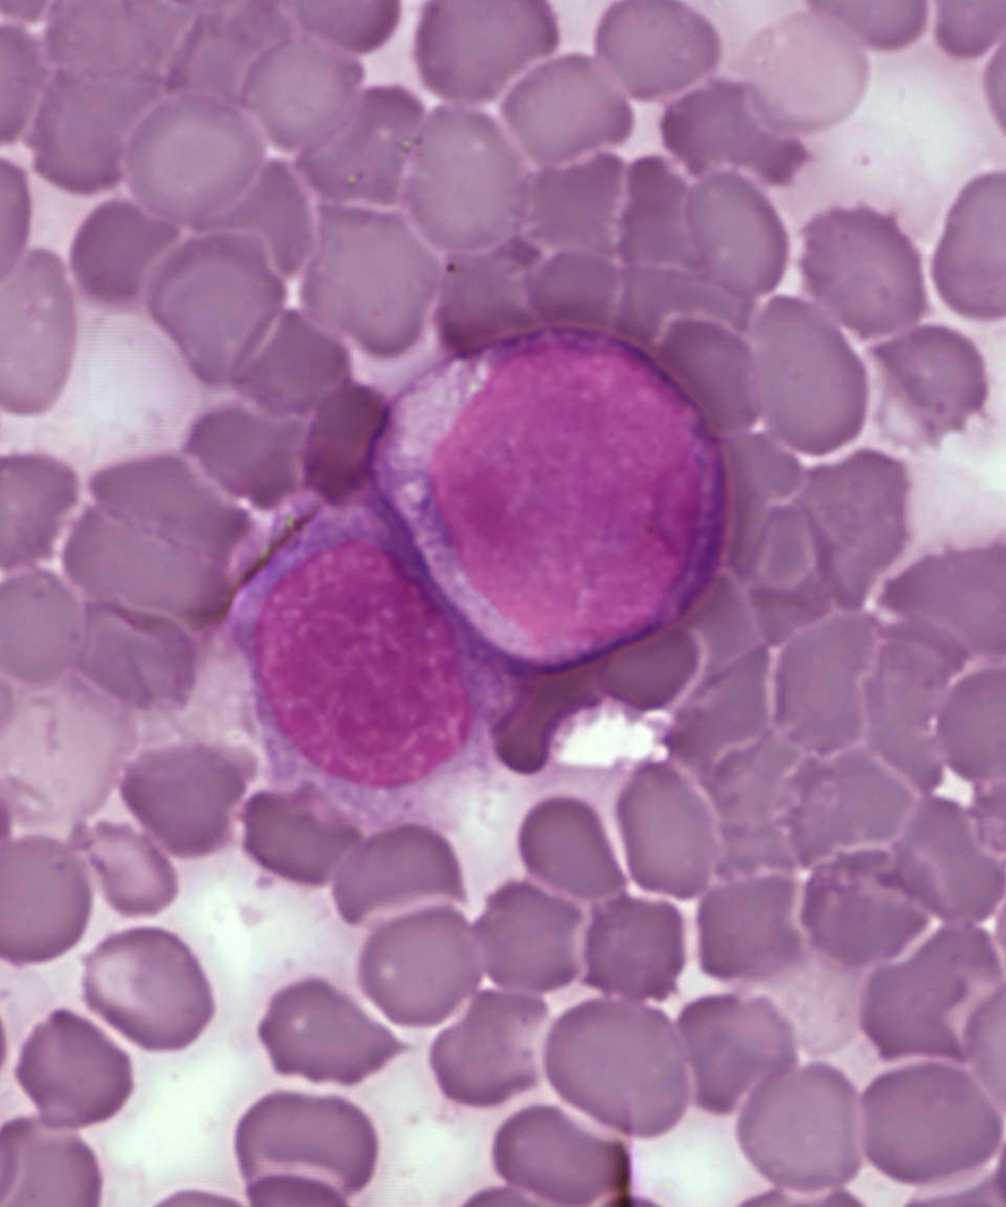 Lors d'une leucémie, les cellules de la moelle osseuse deviennent cancéreuses. Si elles prolifèrent, c'est souvent parce que le système immunitaire ne dispose pas des lymphocytes T CD8 capables d'en débarrasser l'organisme. © Plos One, cc by 2.5